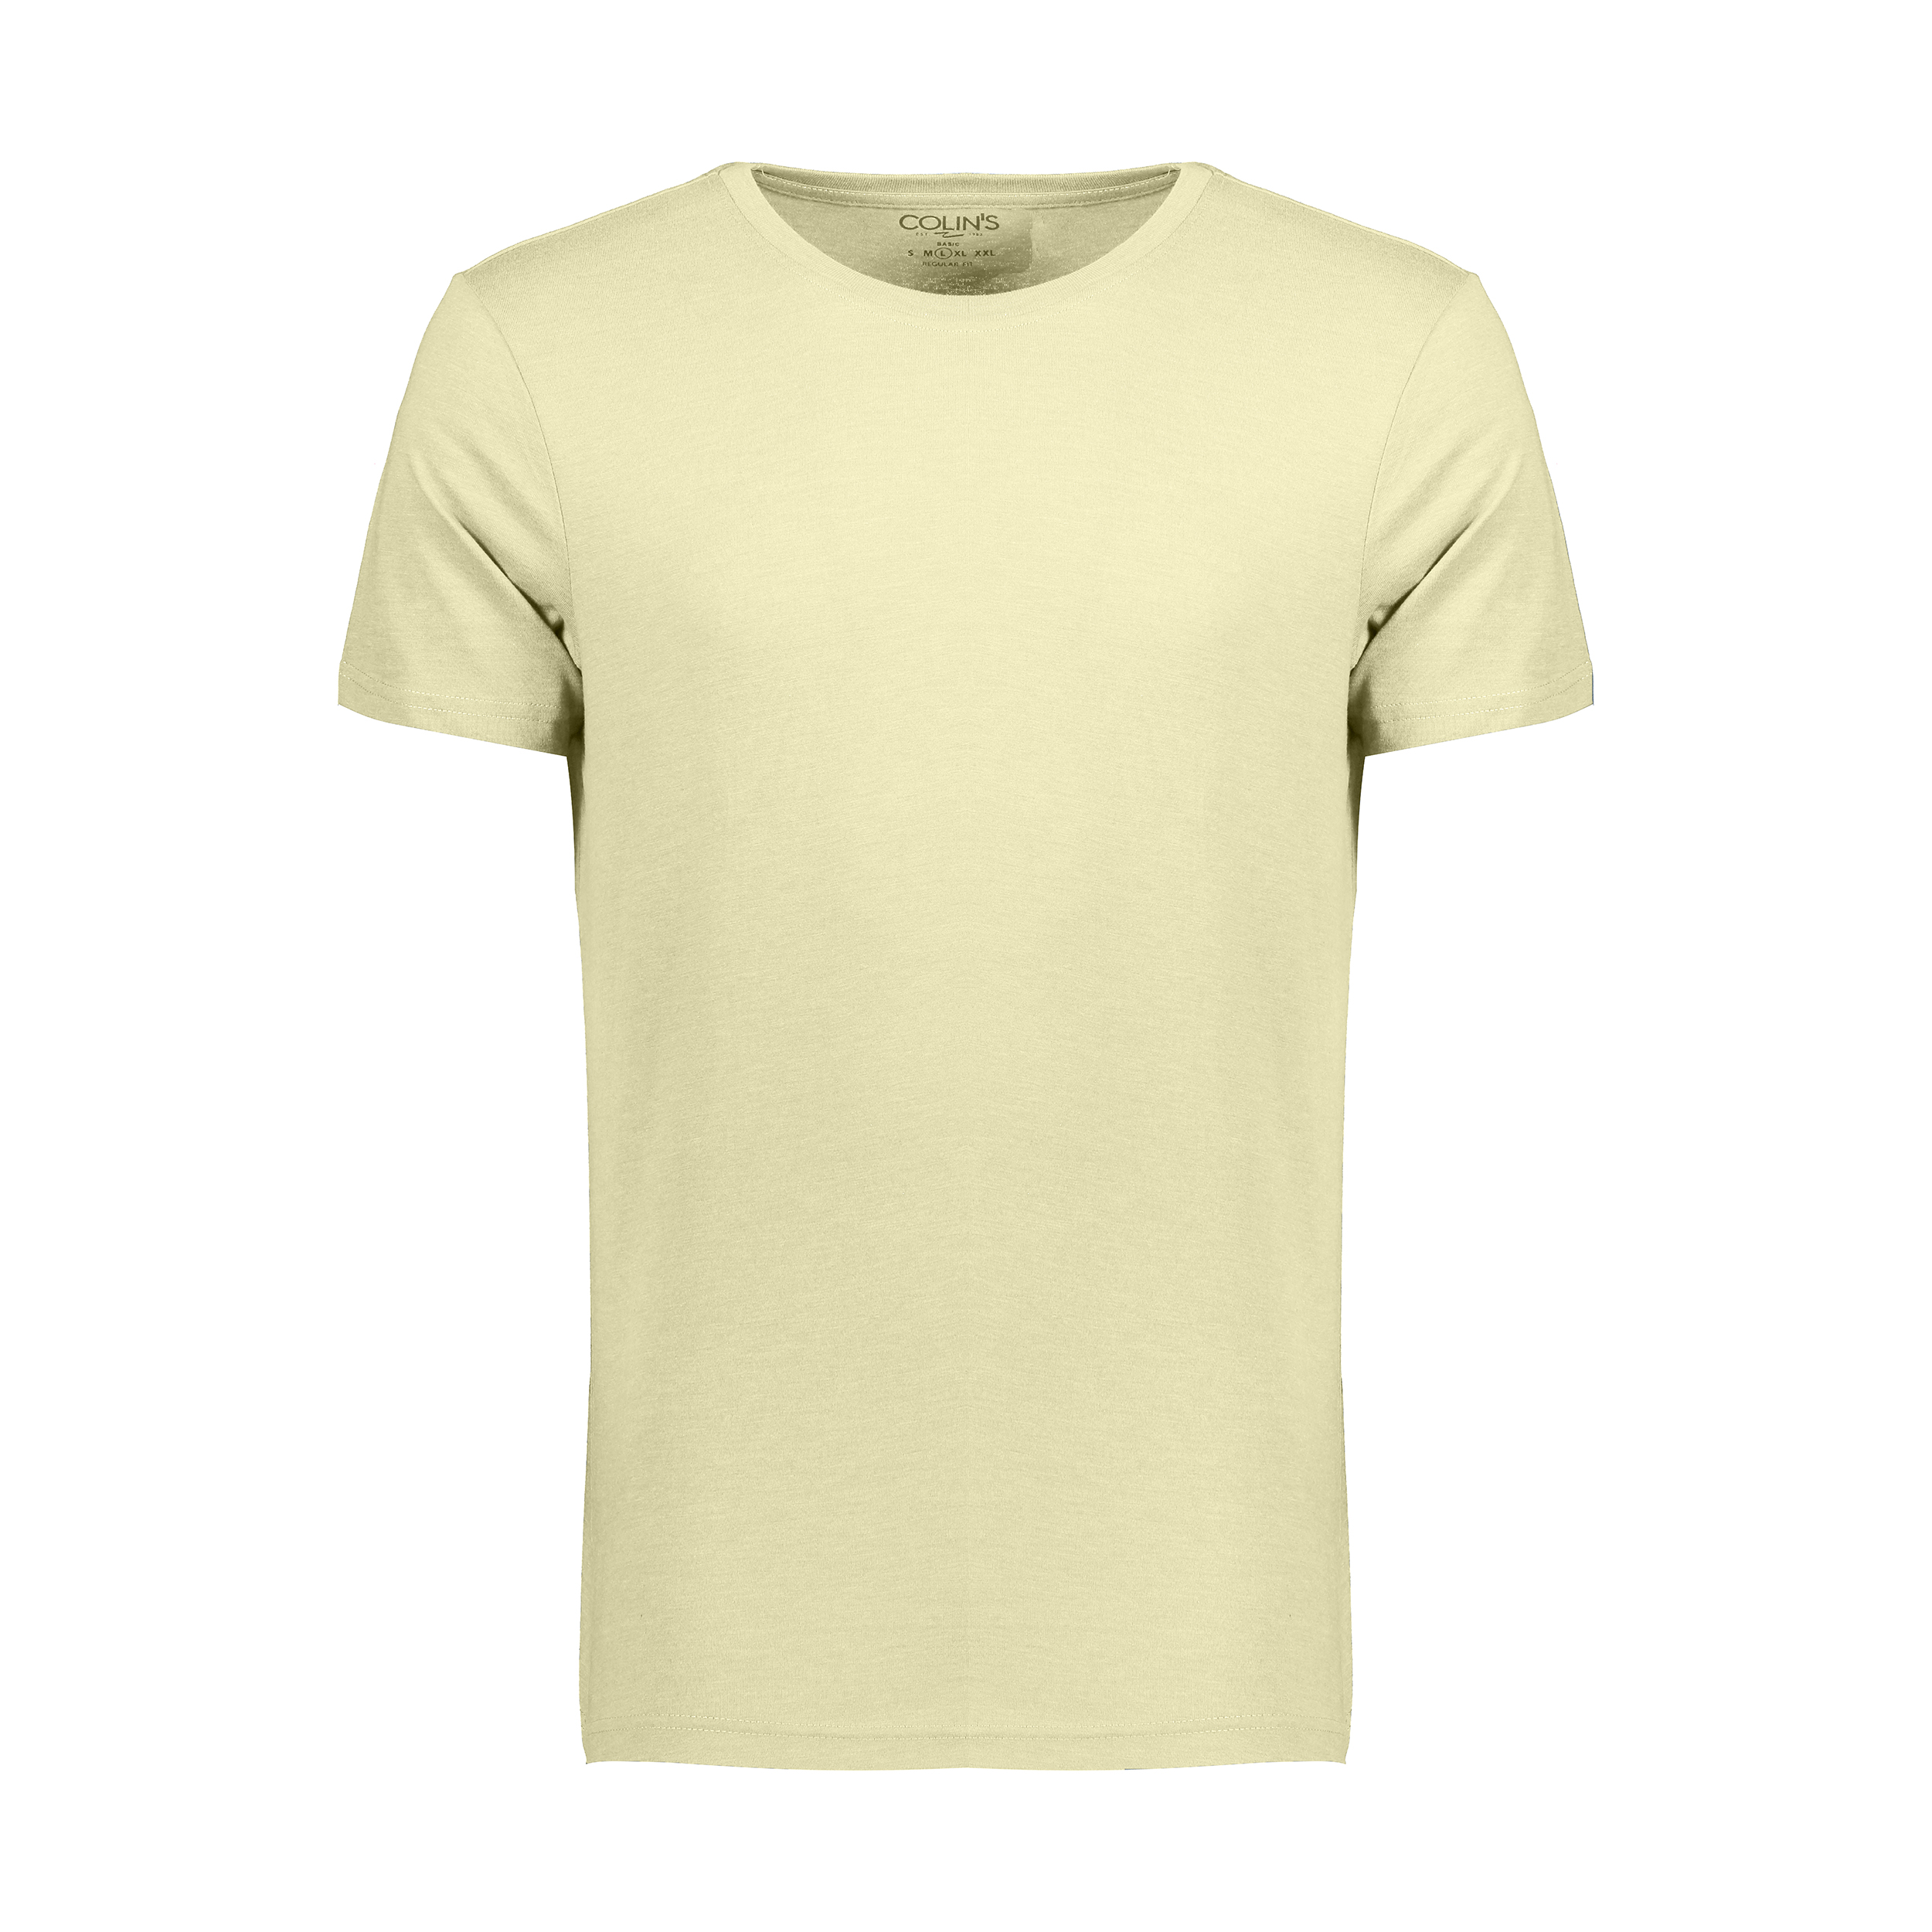 تی شرت مردانه کالینز مدل CL1006931-LYL